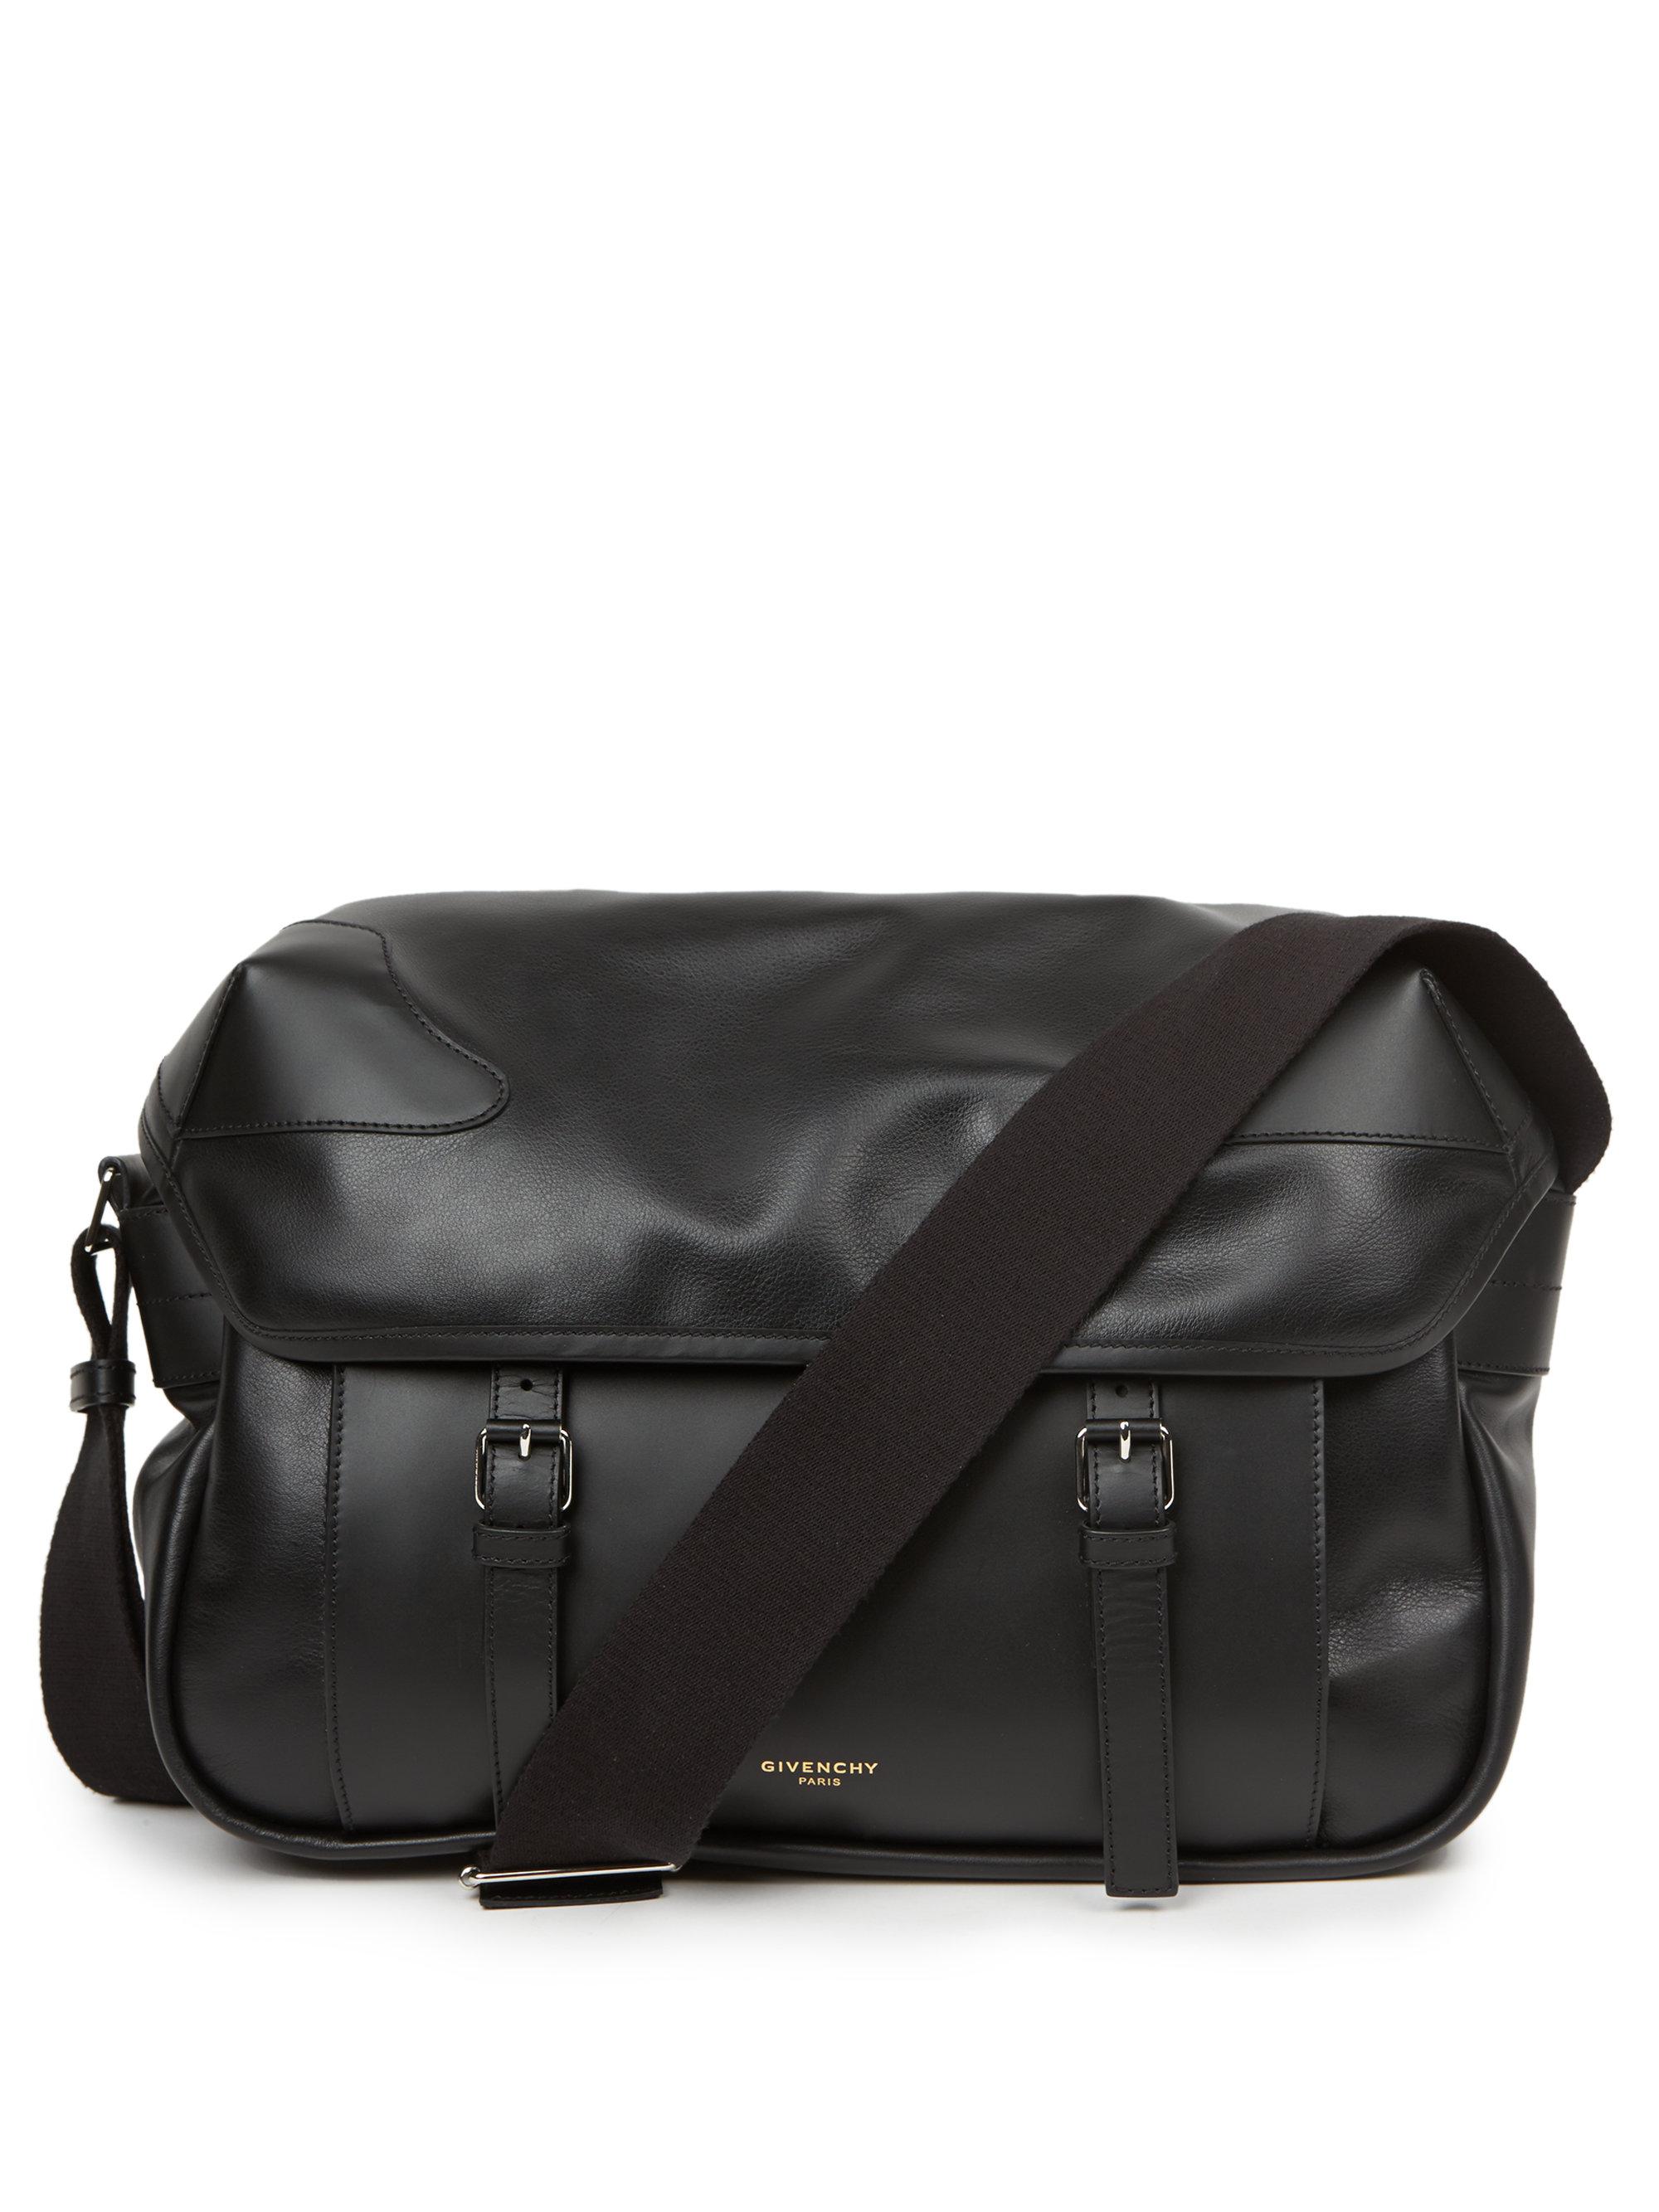 Lyst - Givenchy Leather Messenger Bag in Black for Men